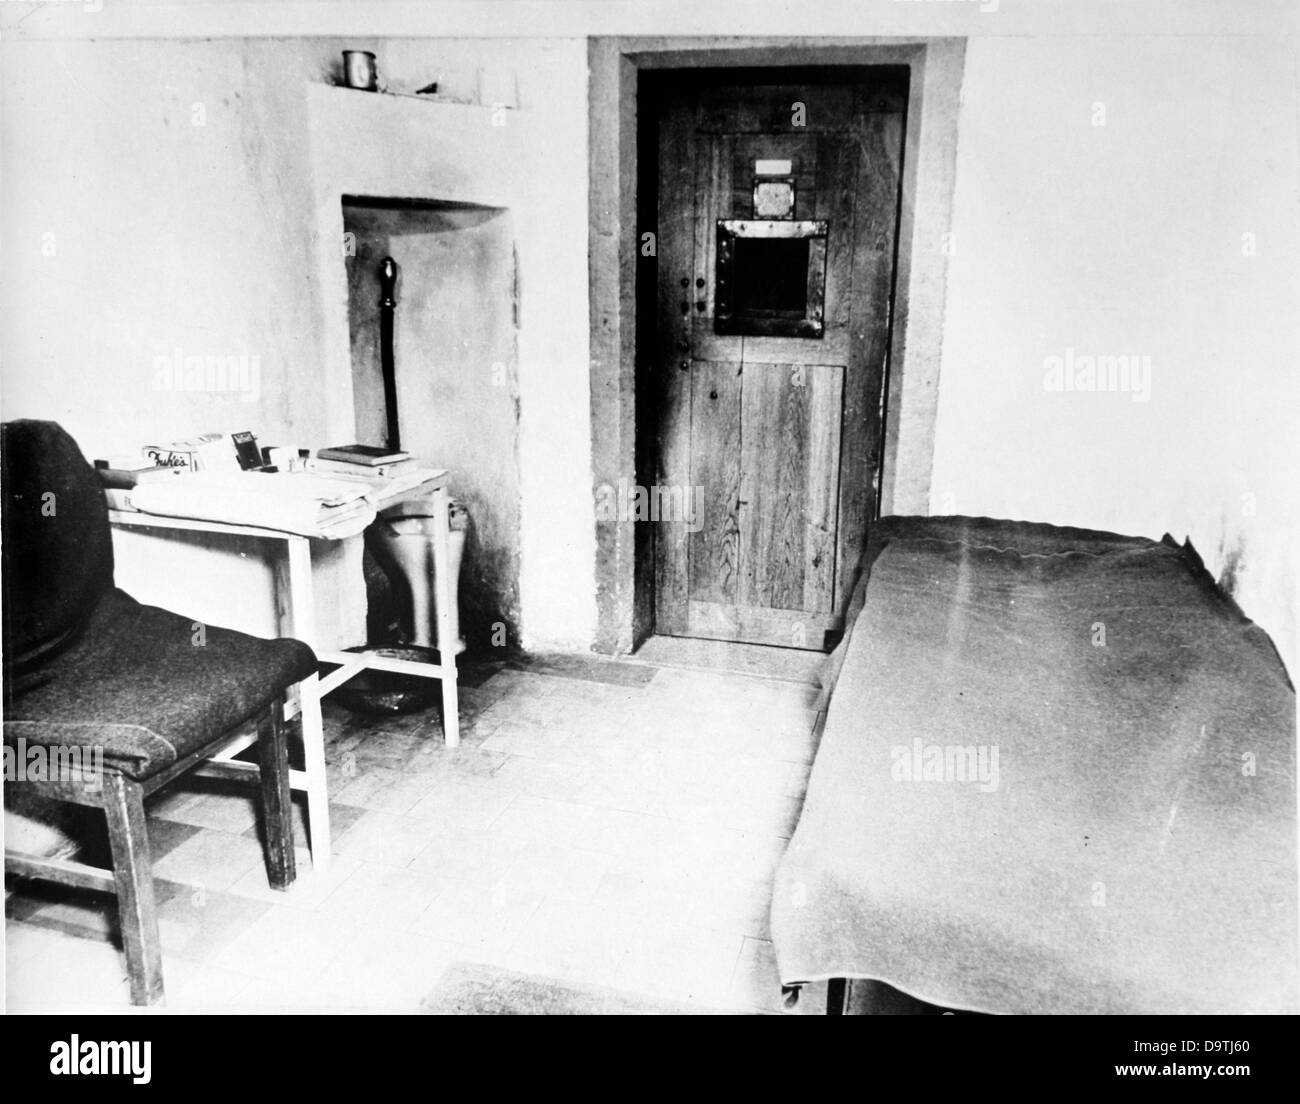 Vue d'une cellule du défendeur dans la prison au palais de justice de Nuremberg, en Allemagne, au cours du procès de Nuremberg dans le cadre du Tribunal militaire international contre les grands criminels de guerre de la Seconde Guerre mondiale à Nuremberg, Allemagne, en 1946. Photo : Yevgeny Khaldei Banque D'Images